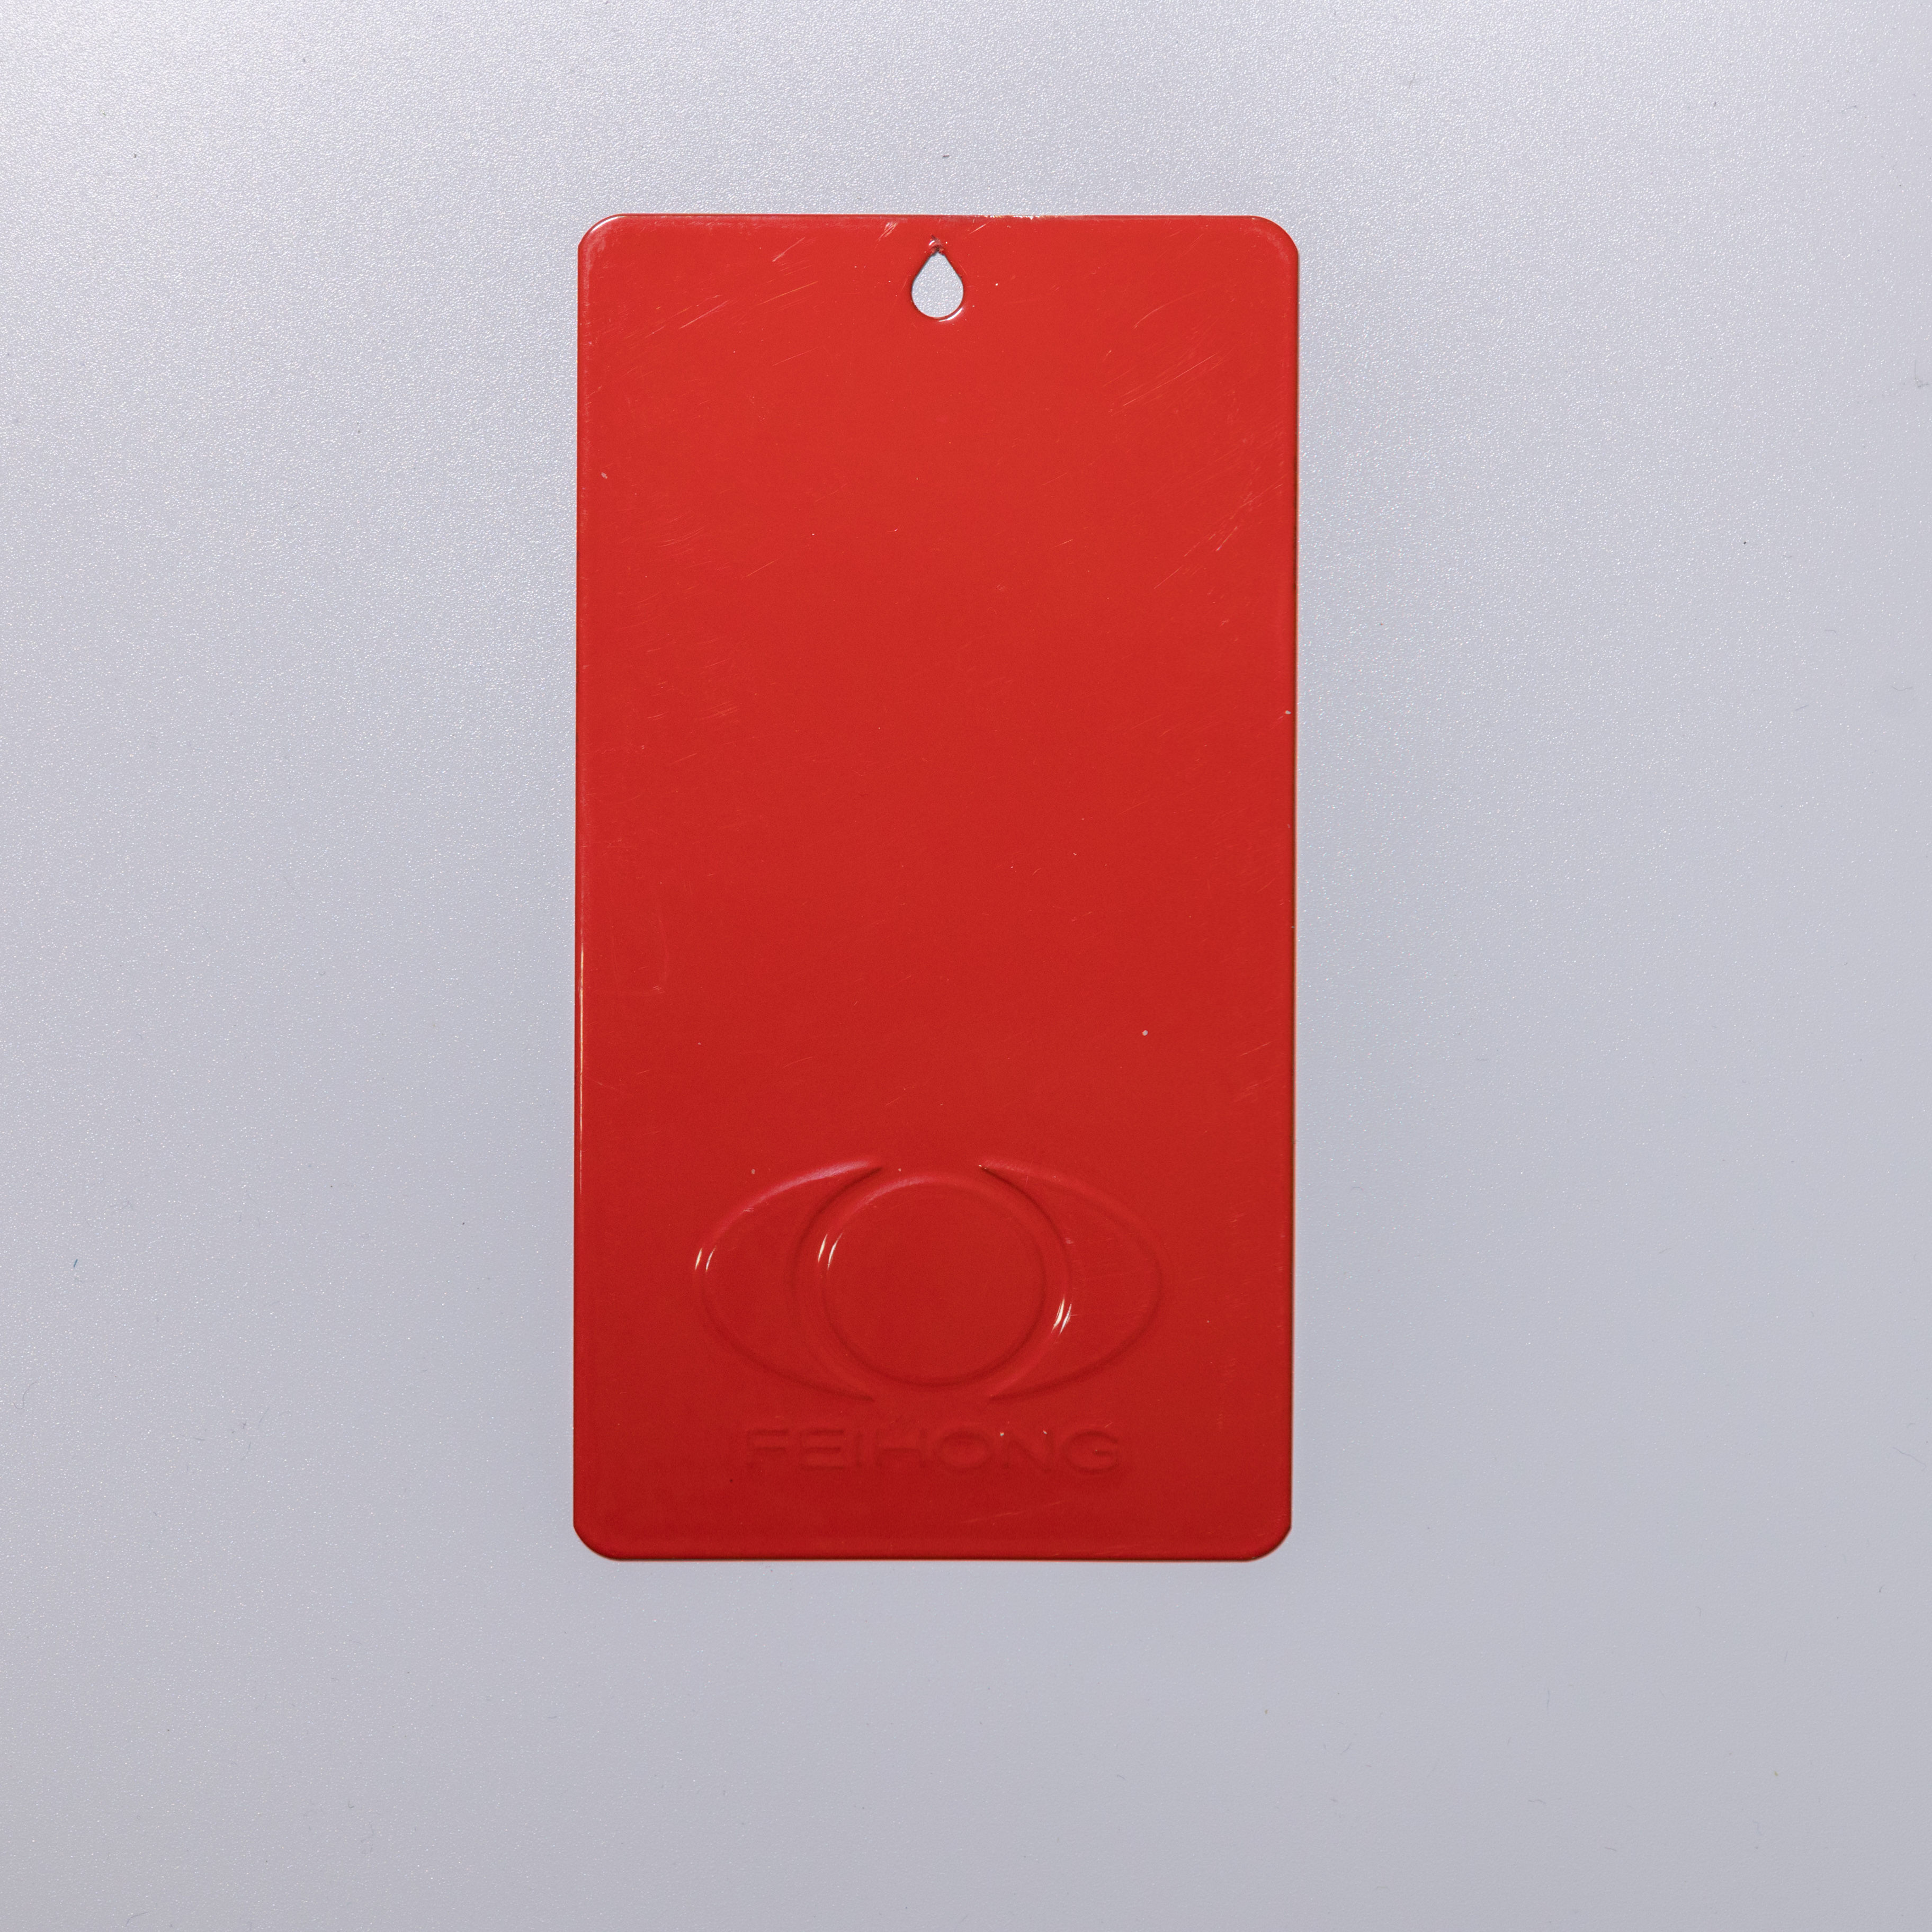 Ral3020/3000 Recubrimiento en polvo de poliéster de color rojo liso brillante para extintor de incendios